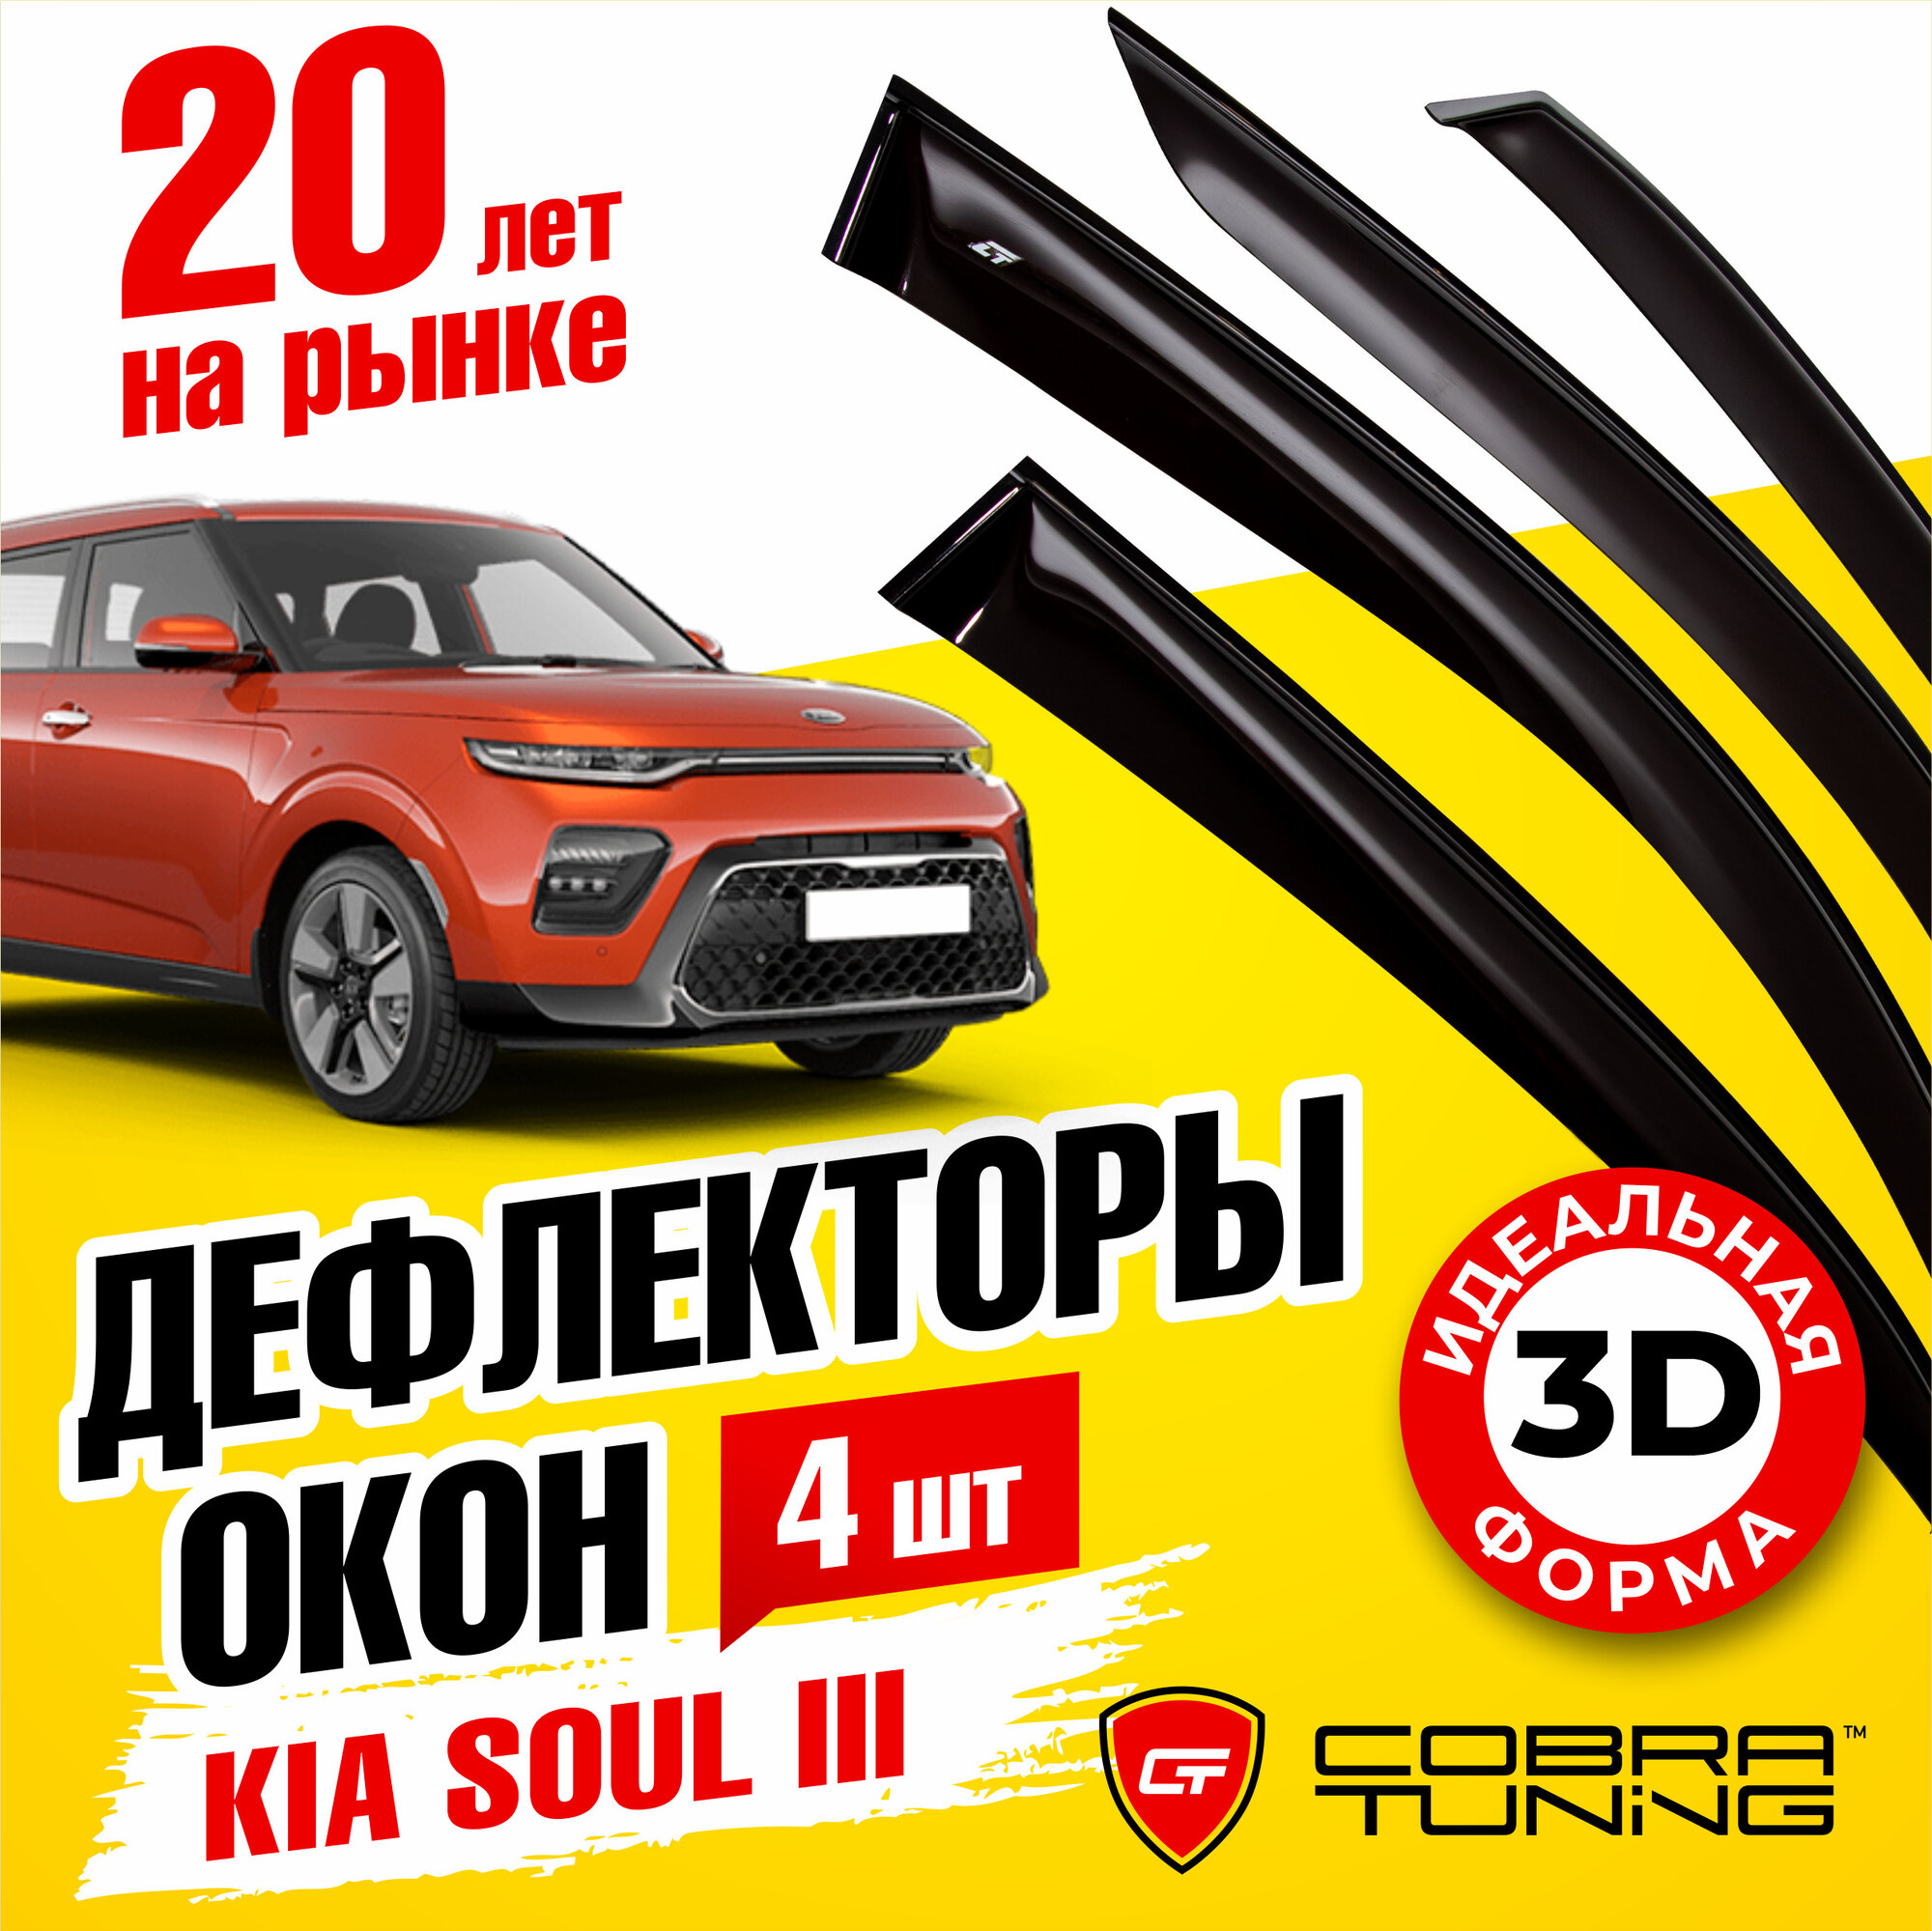 Дефлекторы боковых окон для Kia Soul (Киа Соул) (SK3) 2019-2022 ветровики на двери автомобиля Cobra Tuning